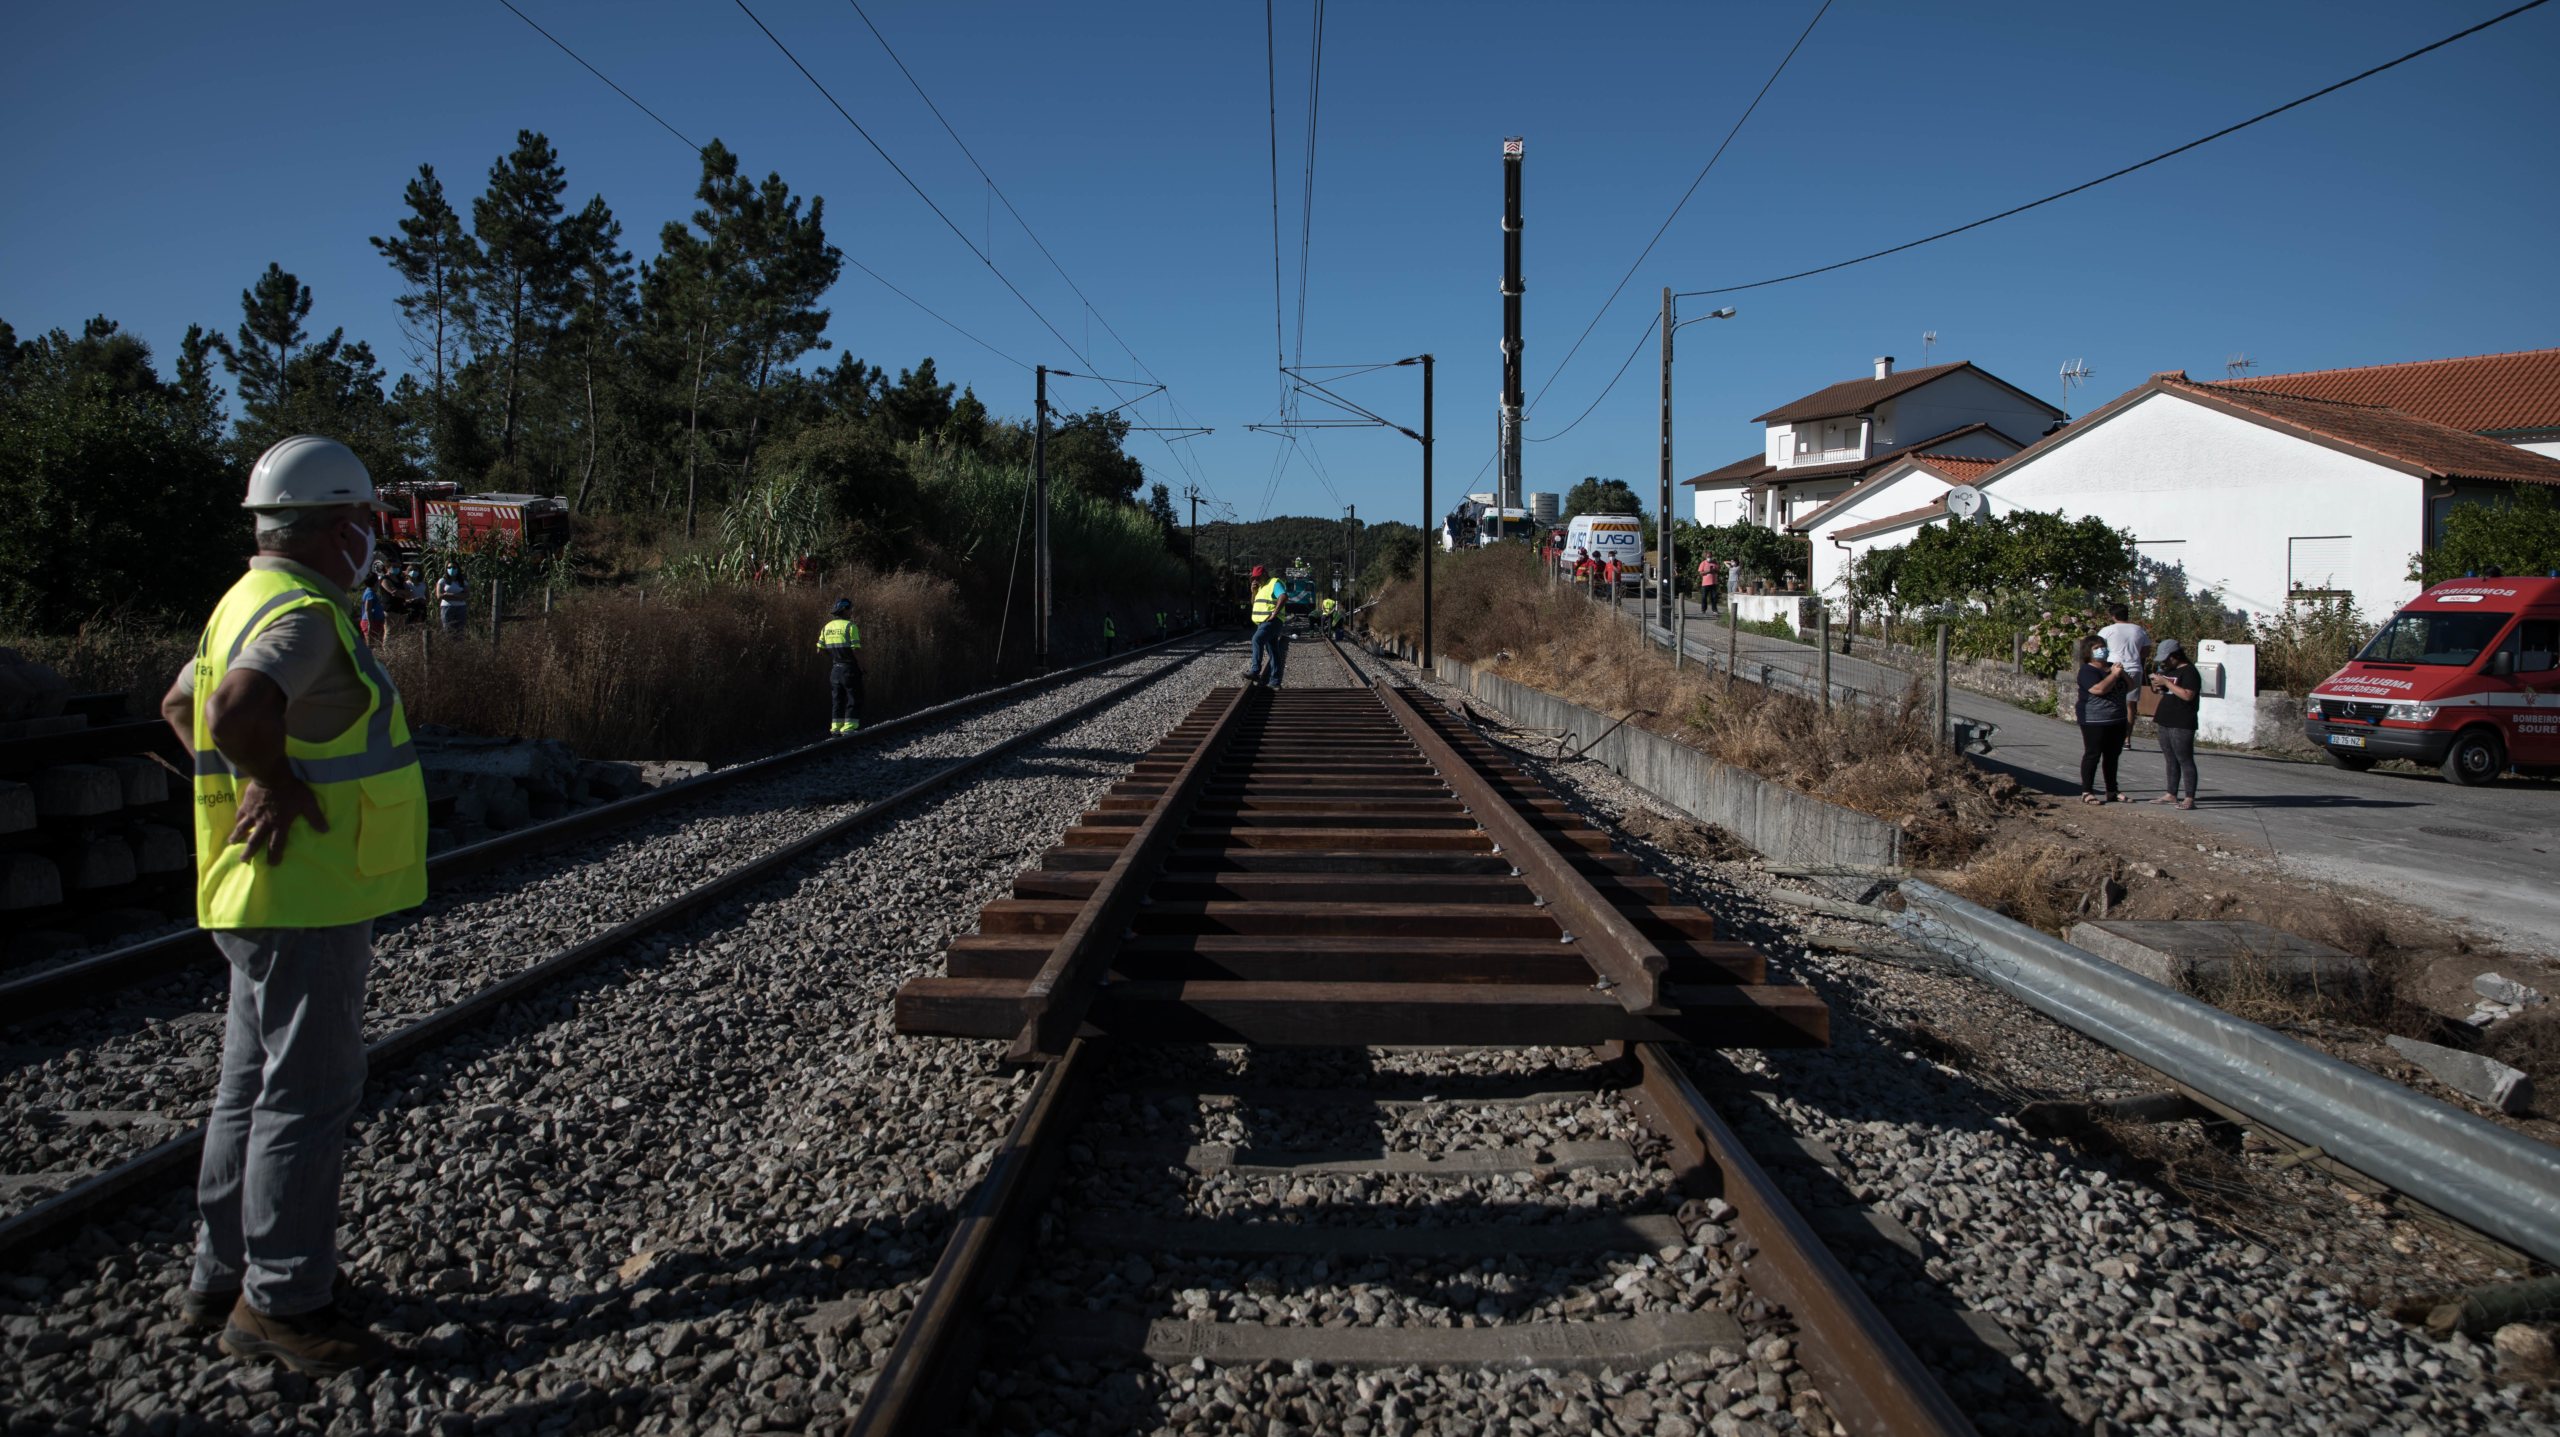 O comboio seguia no sentido sul-norte com destino a Braga e o descarrilamento deu-se após o Alfa Pendular abalroar um VCC